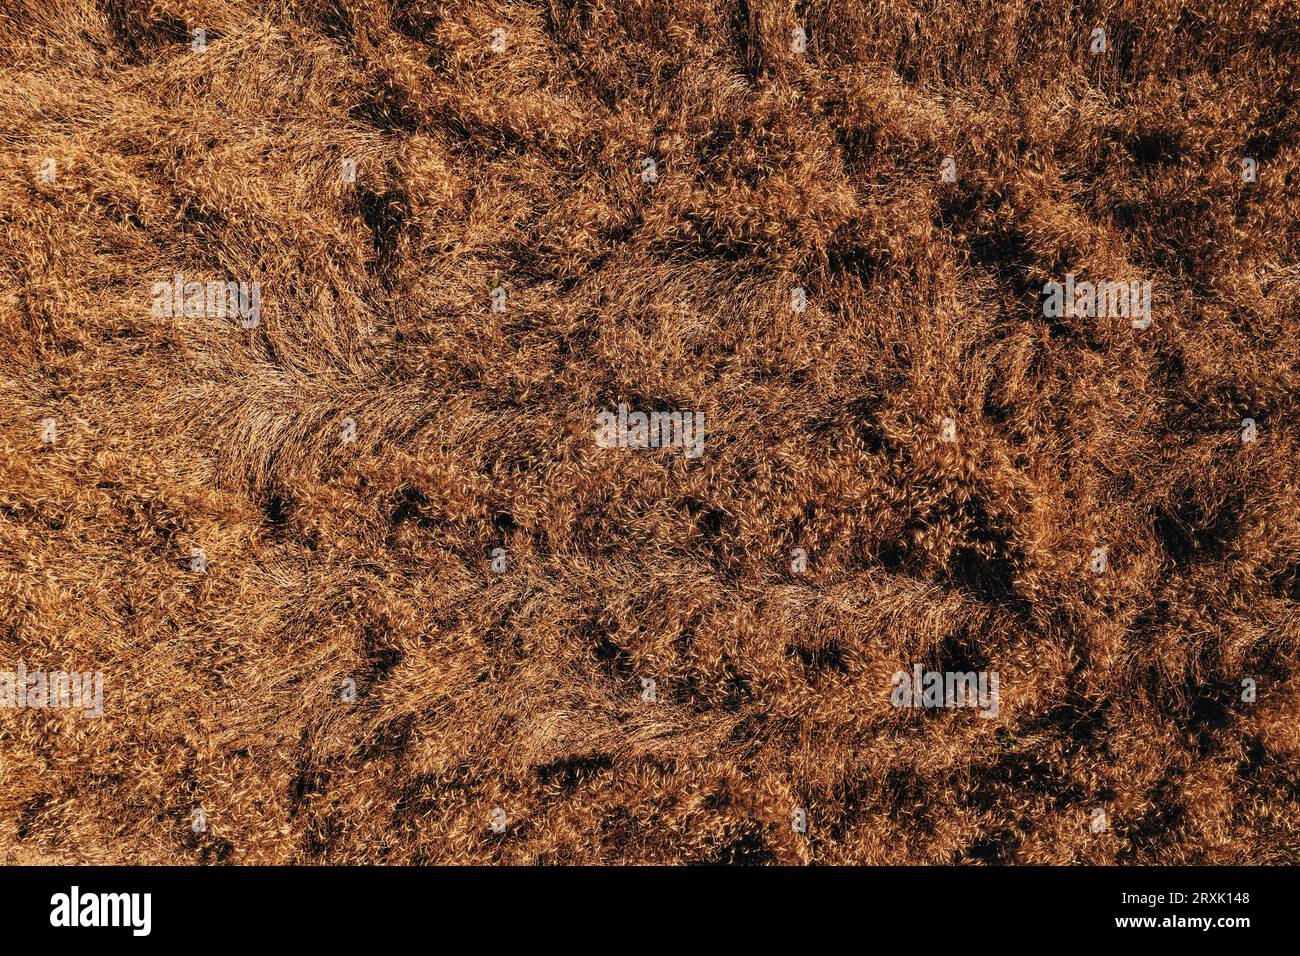 Luftaufnahme beschädigter Weizenfrüchte nach einem Sturm, Drohnen-pov-Bild einer geknickten Getreideplantage als landwirtschaftlicher Hintergrund, Draufsicht Stockfoto